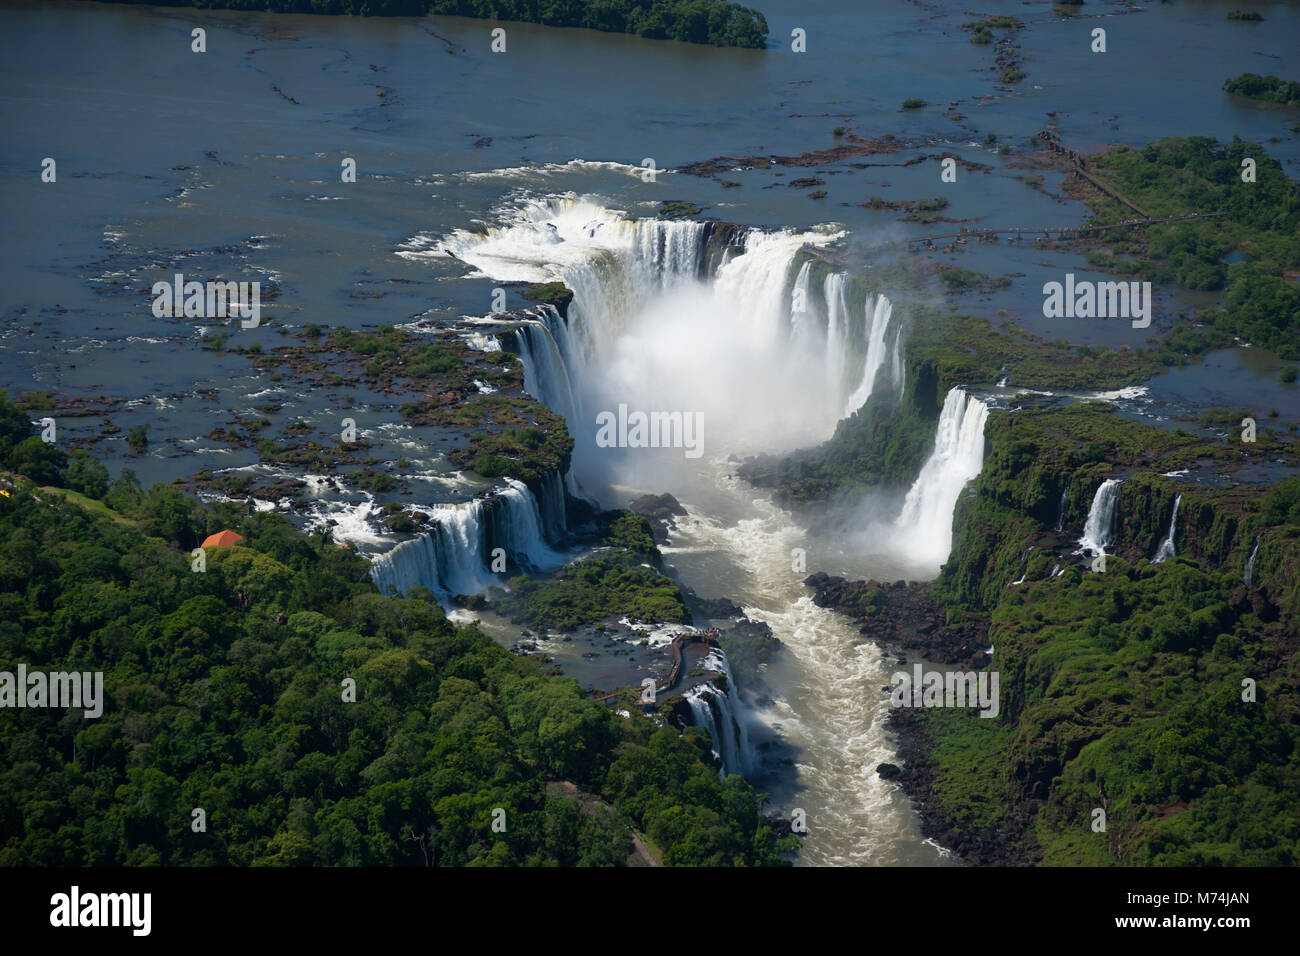 Pan de l'antenne d'Iguazu les chutes d'eau, rivière, sentier de la promenade minuscule taille ajoute perspective, border Brésil Argentine Paraguay site du patrimoine mondial de l'UNESCO Banque D'Images